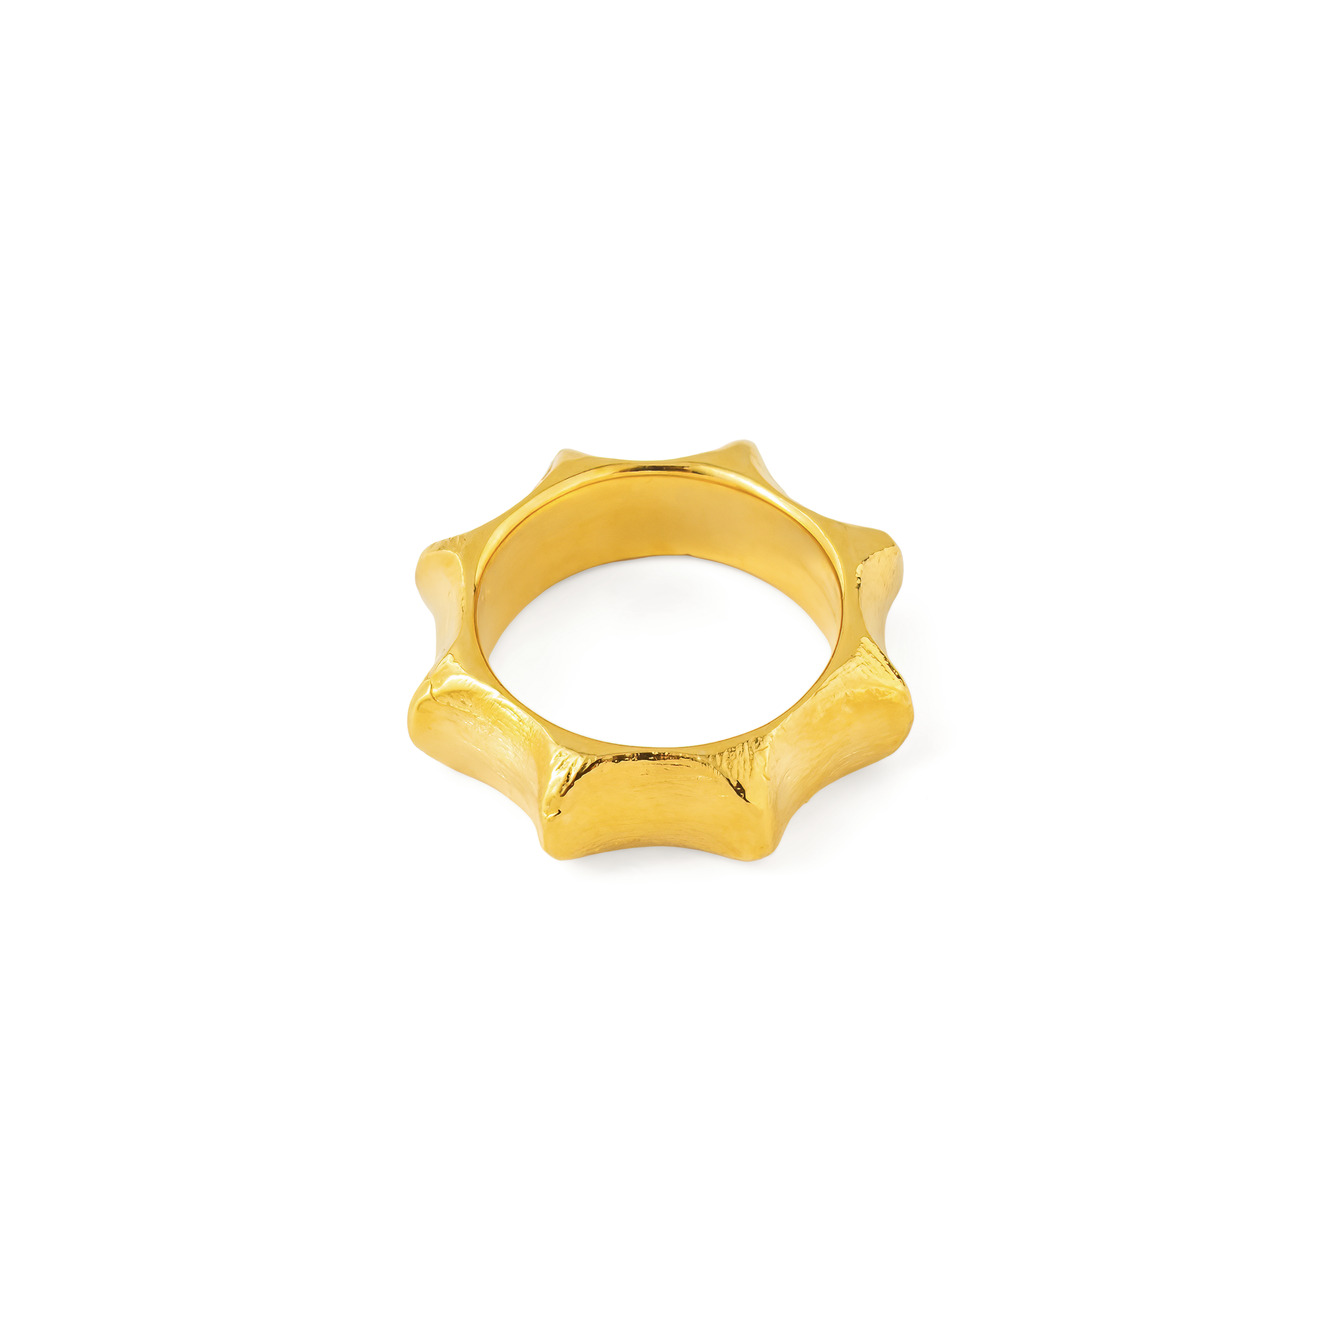 Sevenworlds позолоченное кольцо Starfruit sevenworlds позолоченное кольцо papua